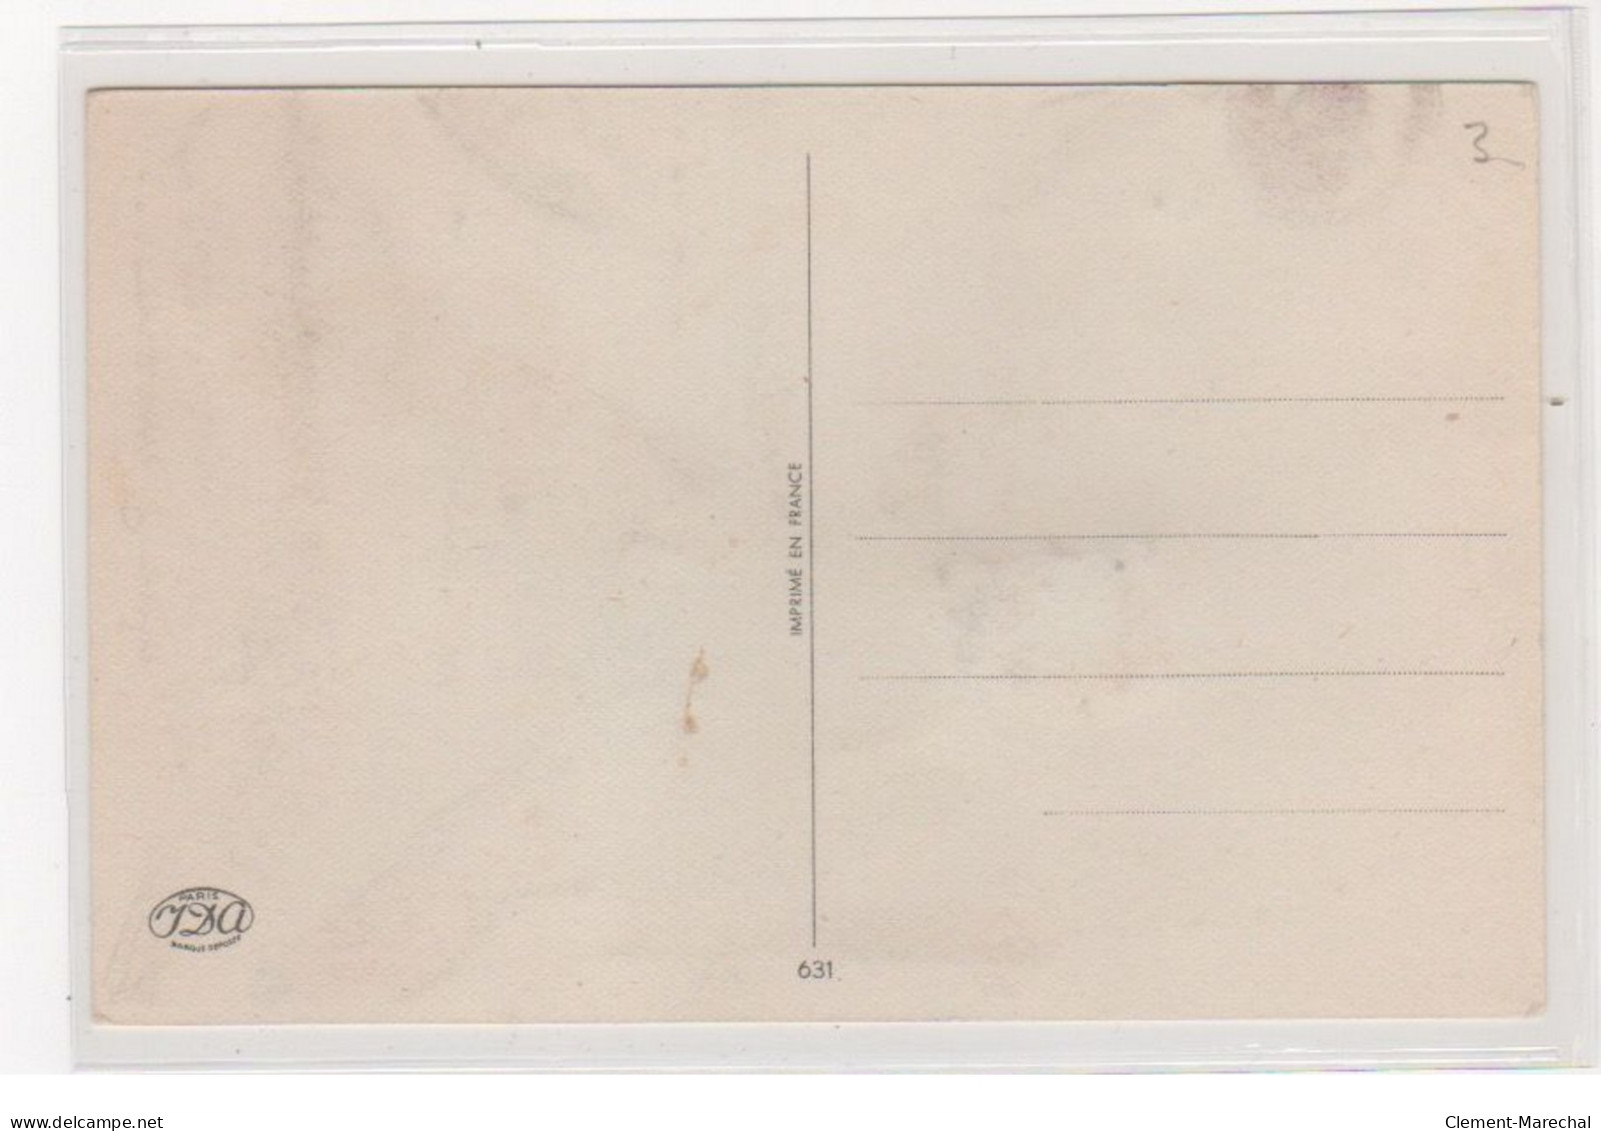 BOURET Germaine : Cpa Avec Collage (systeme - Série 631 - Boxe) (ex-collection Amigon) - Très Bon état - Bouret, Germaine